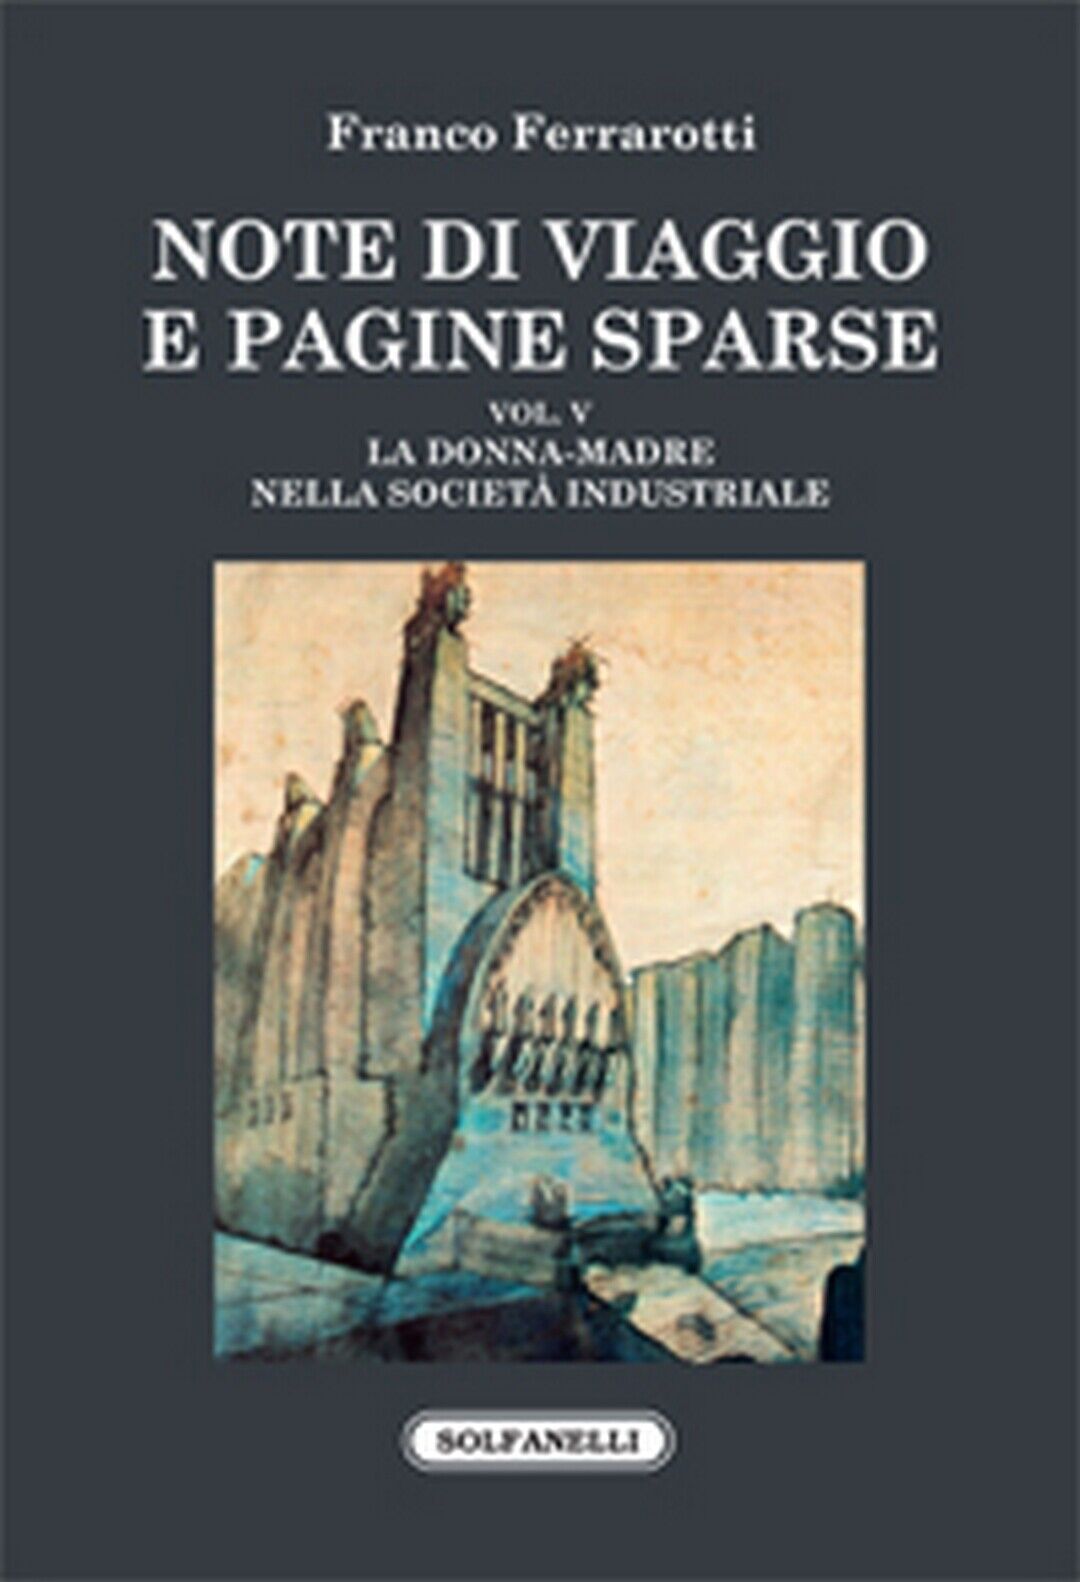 NOTE DI VIAGGIO E PAGINE SPARSE Vol. V  di Franco Ferrarotti,  Solfanelli Ediz. libro usato